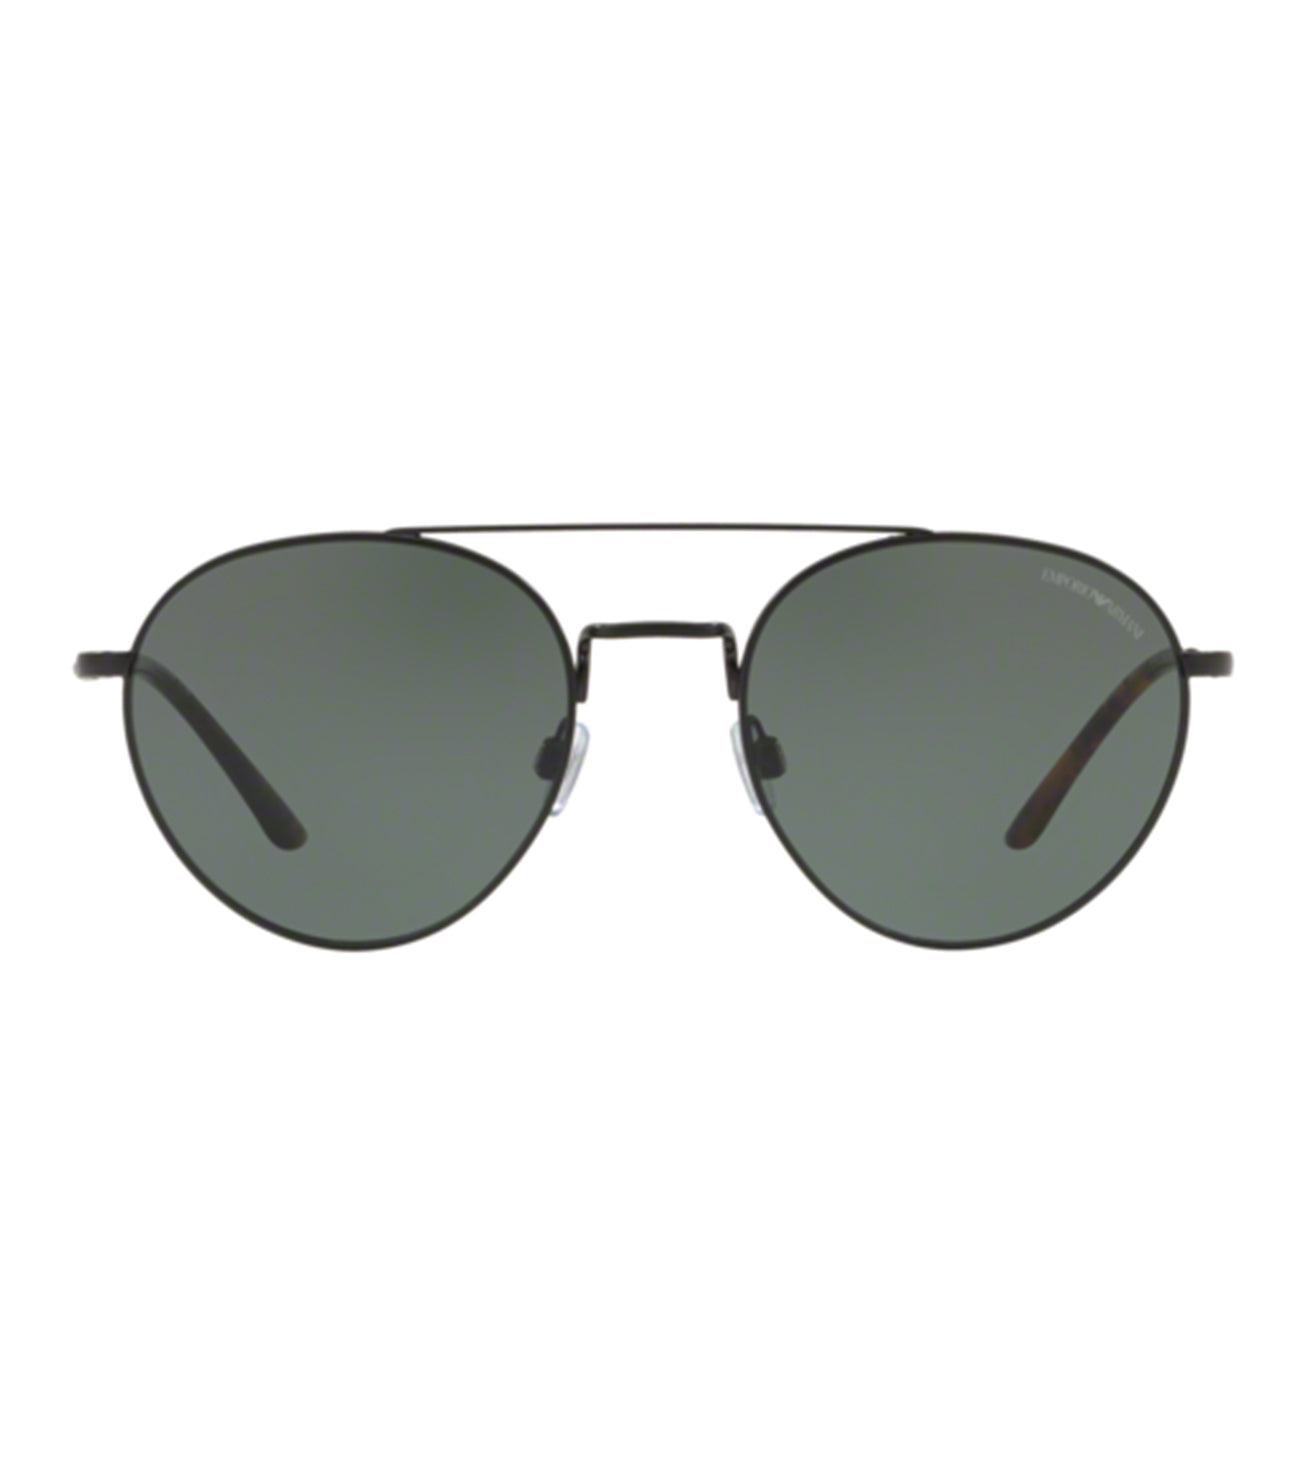 Giorgio Armani Men's Green Aviator Sunglasses